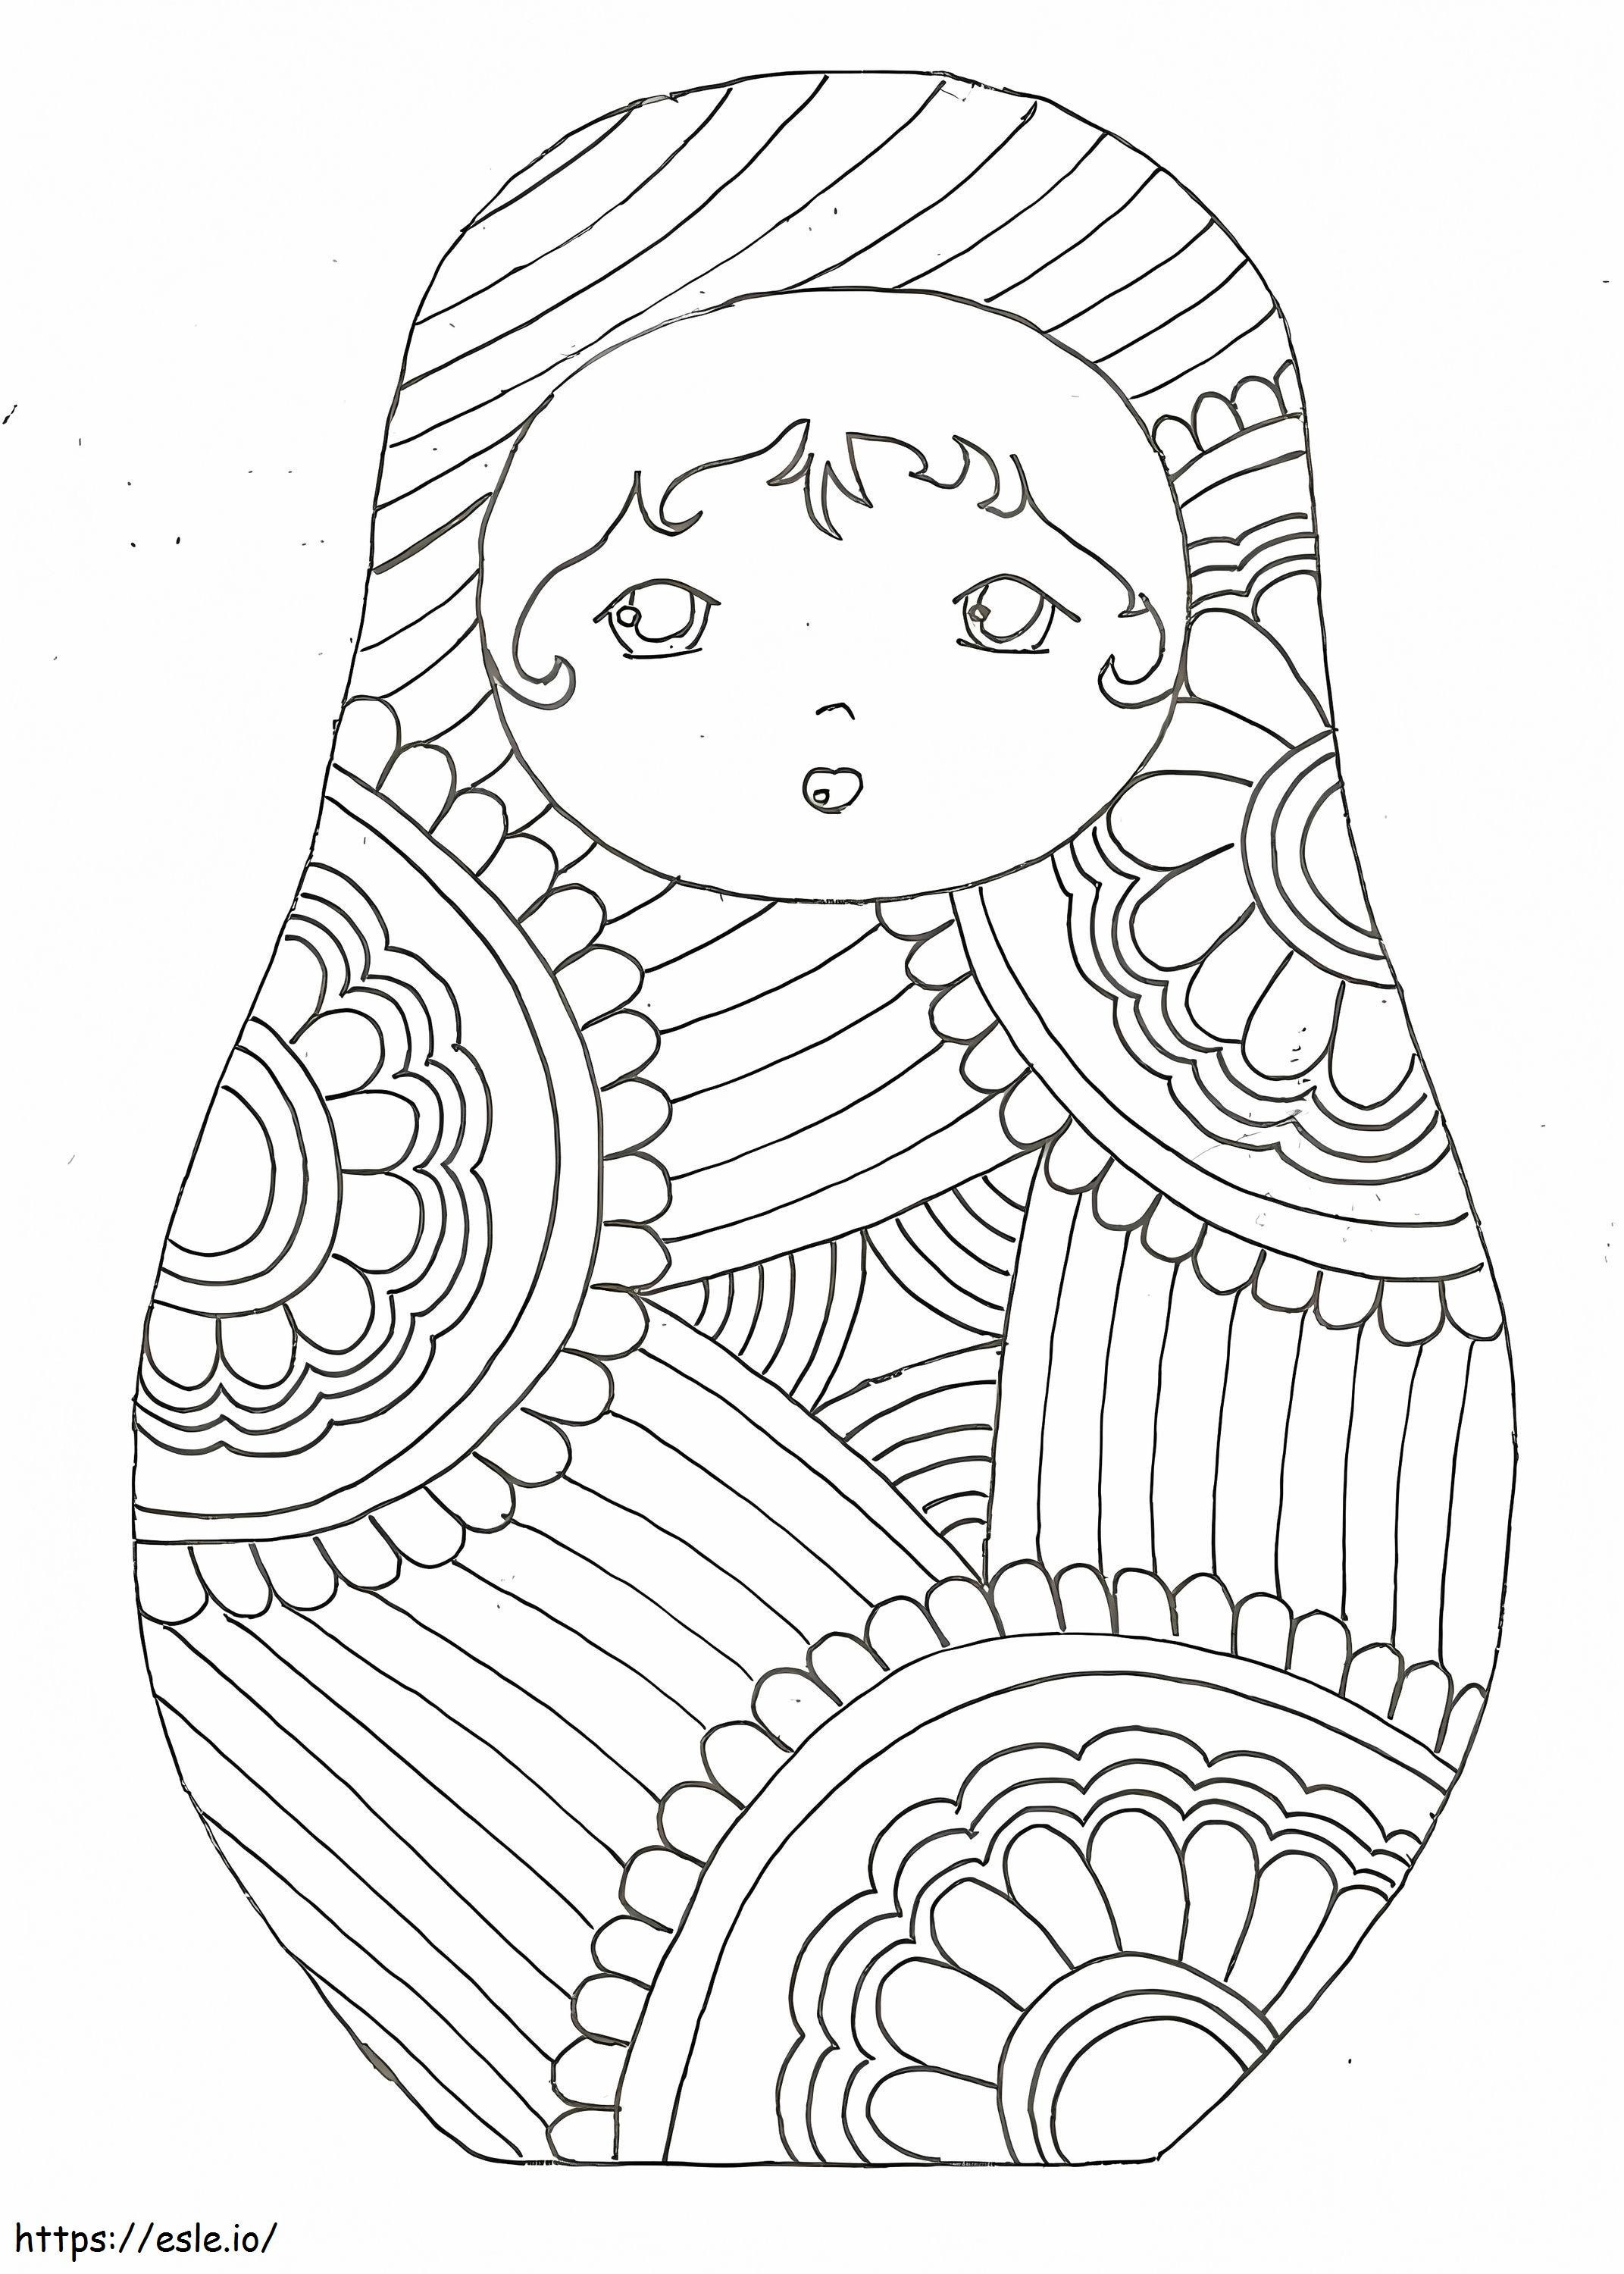 Russian Doll Matryoshka 6 coloring page